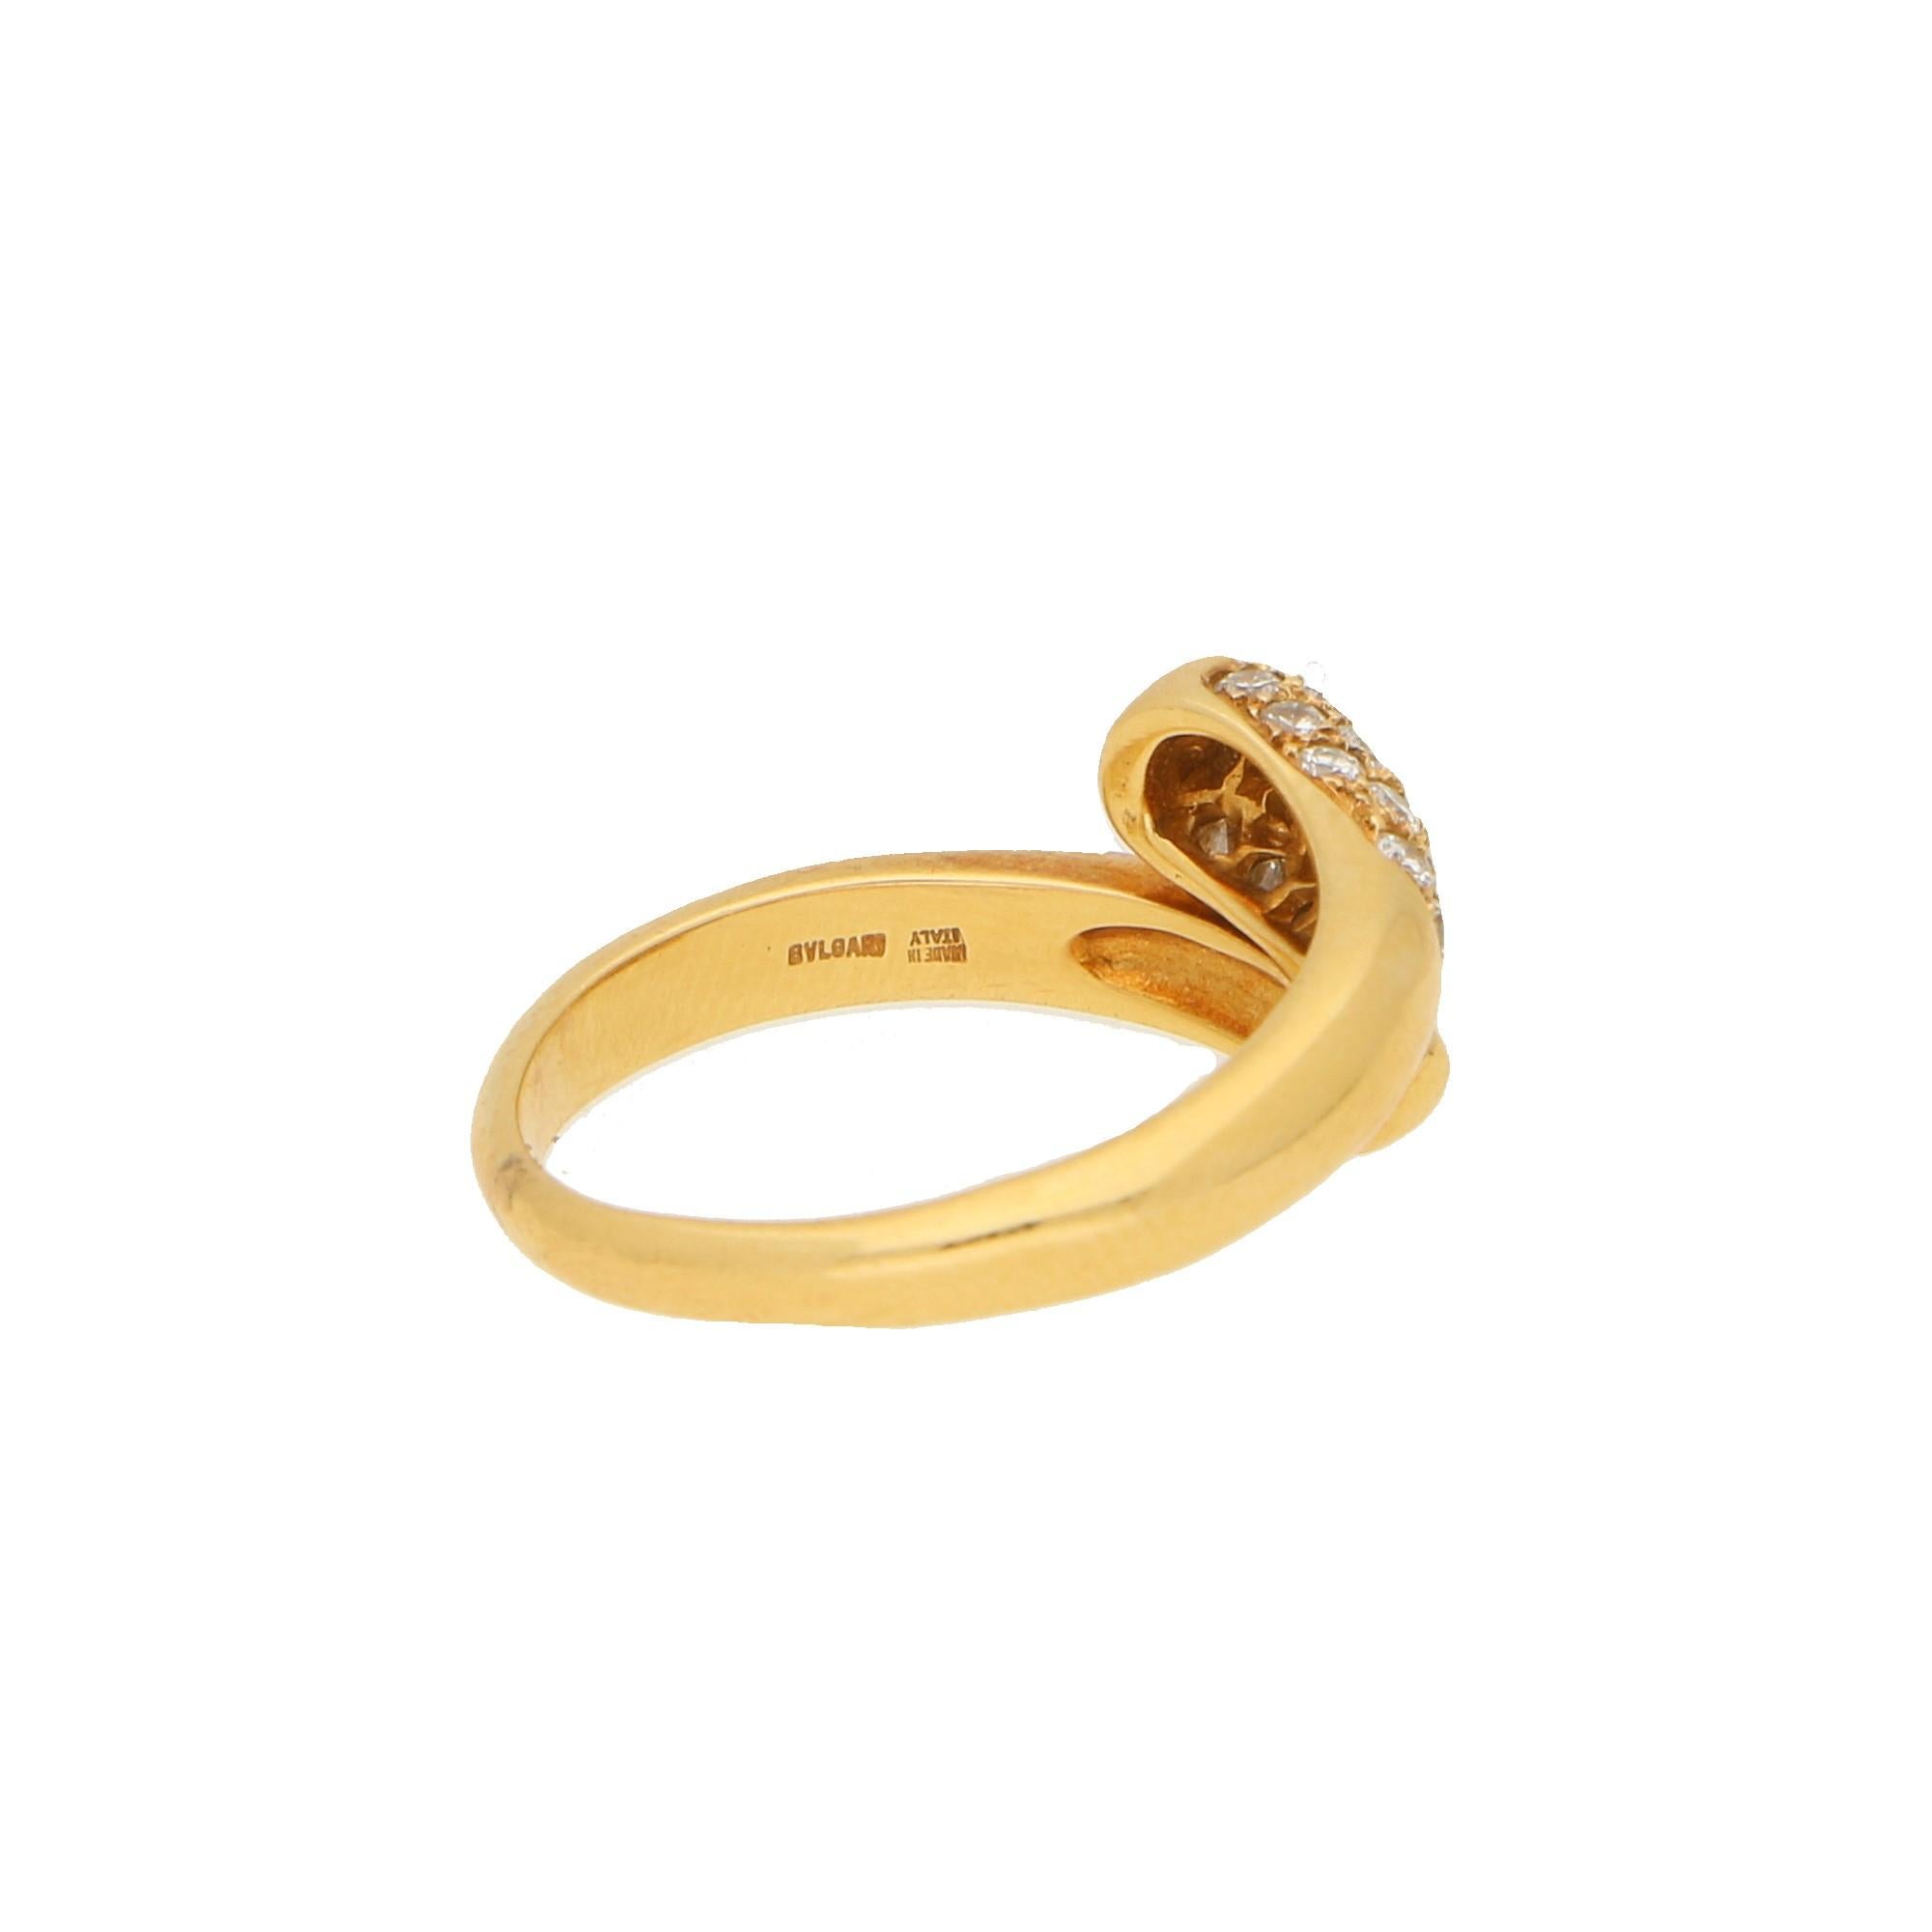 Round Cut Bvlgari Serpenti Diamond Ring 18K Yellow Gold